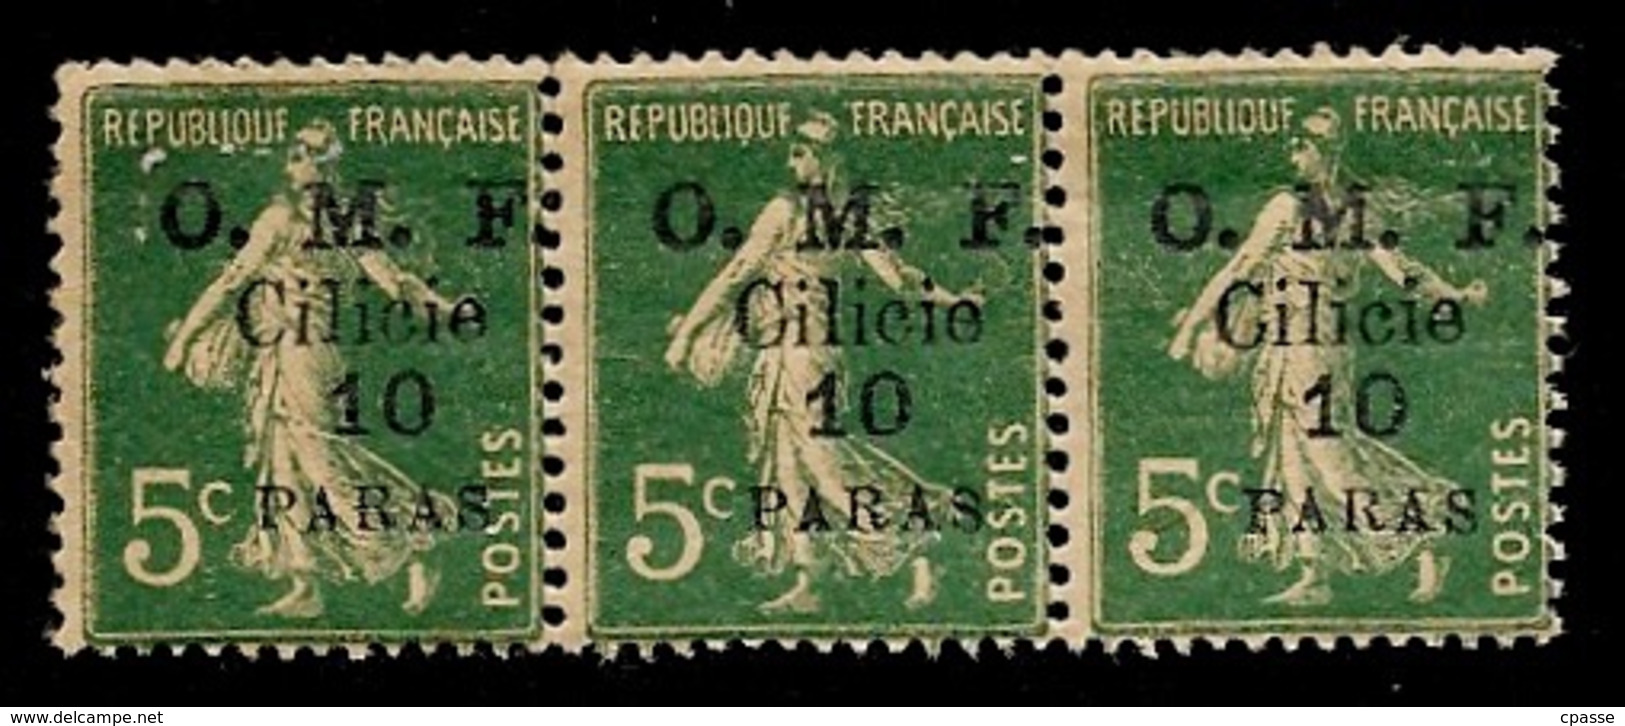 (Bande De 3) Timbre Type Semeuse Surchargé O.M.F. Cilicie (dix) PARAS - Unused Stamps